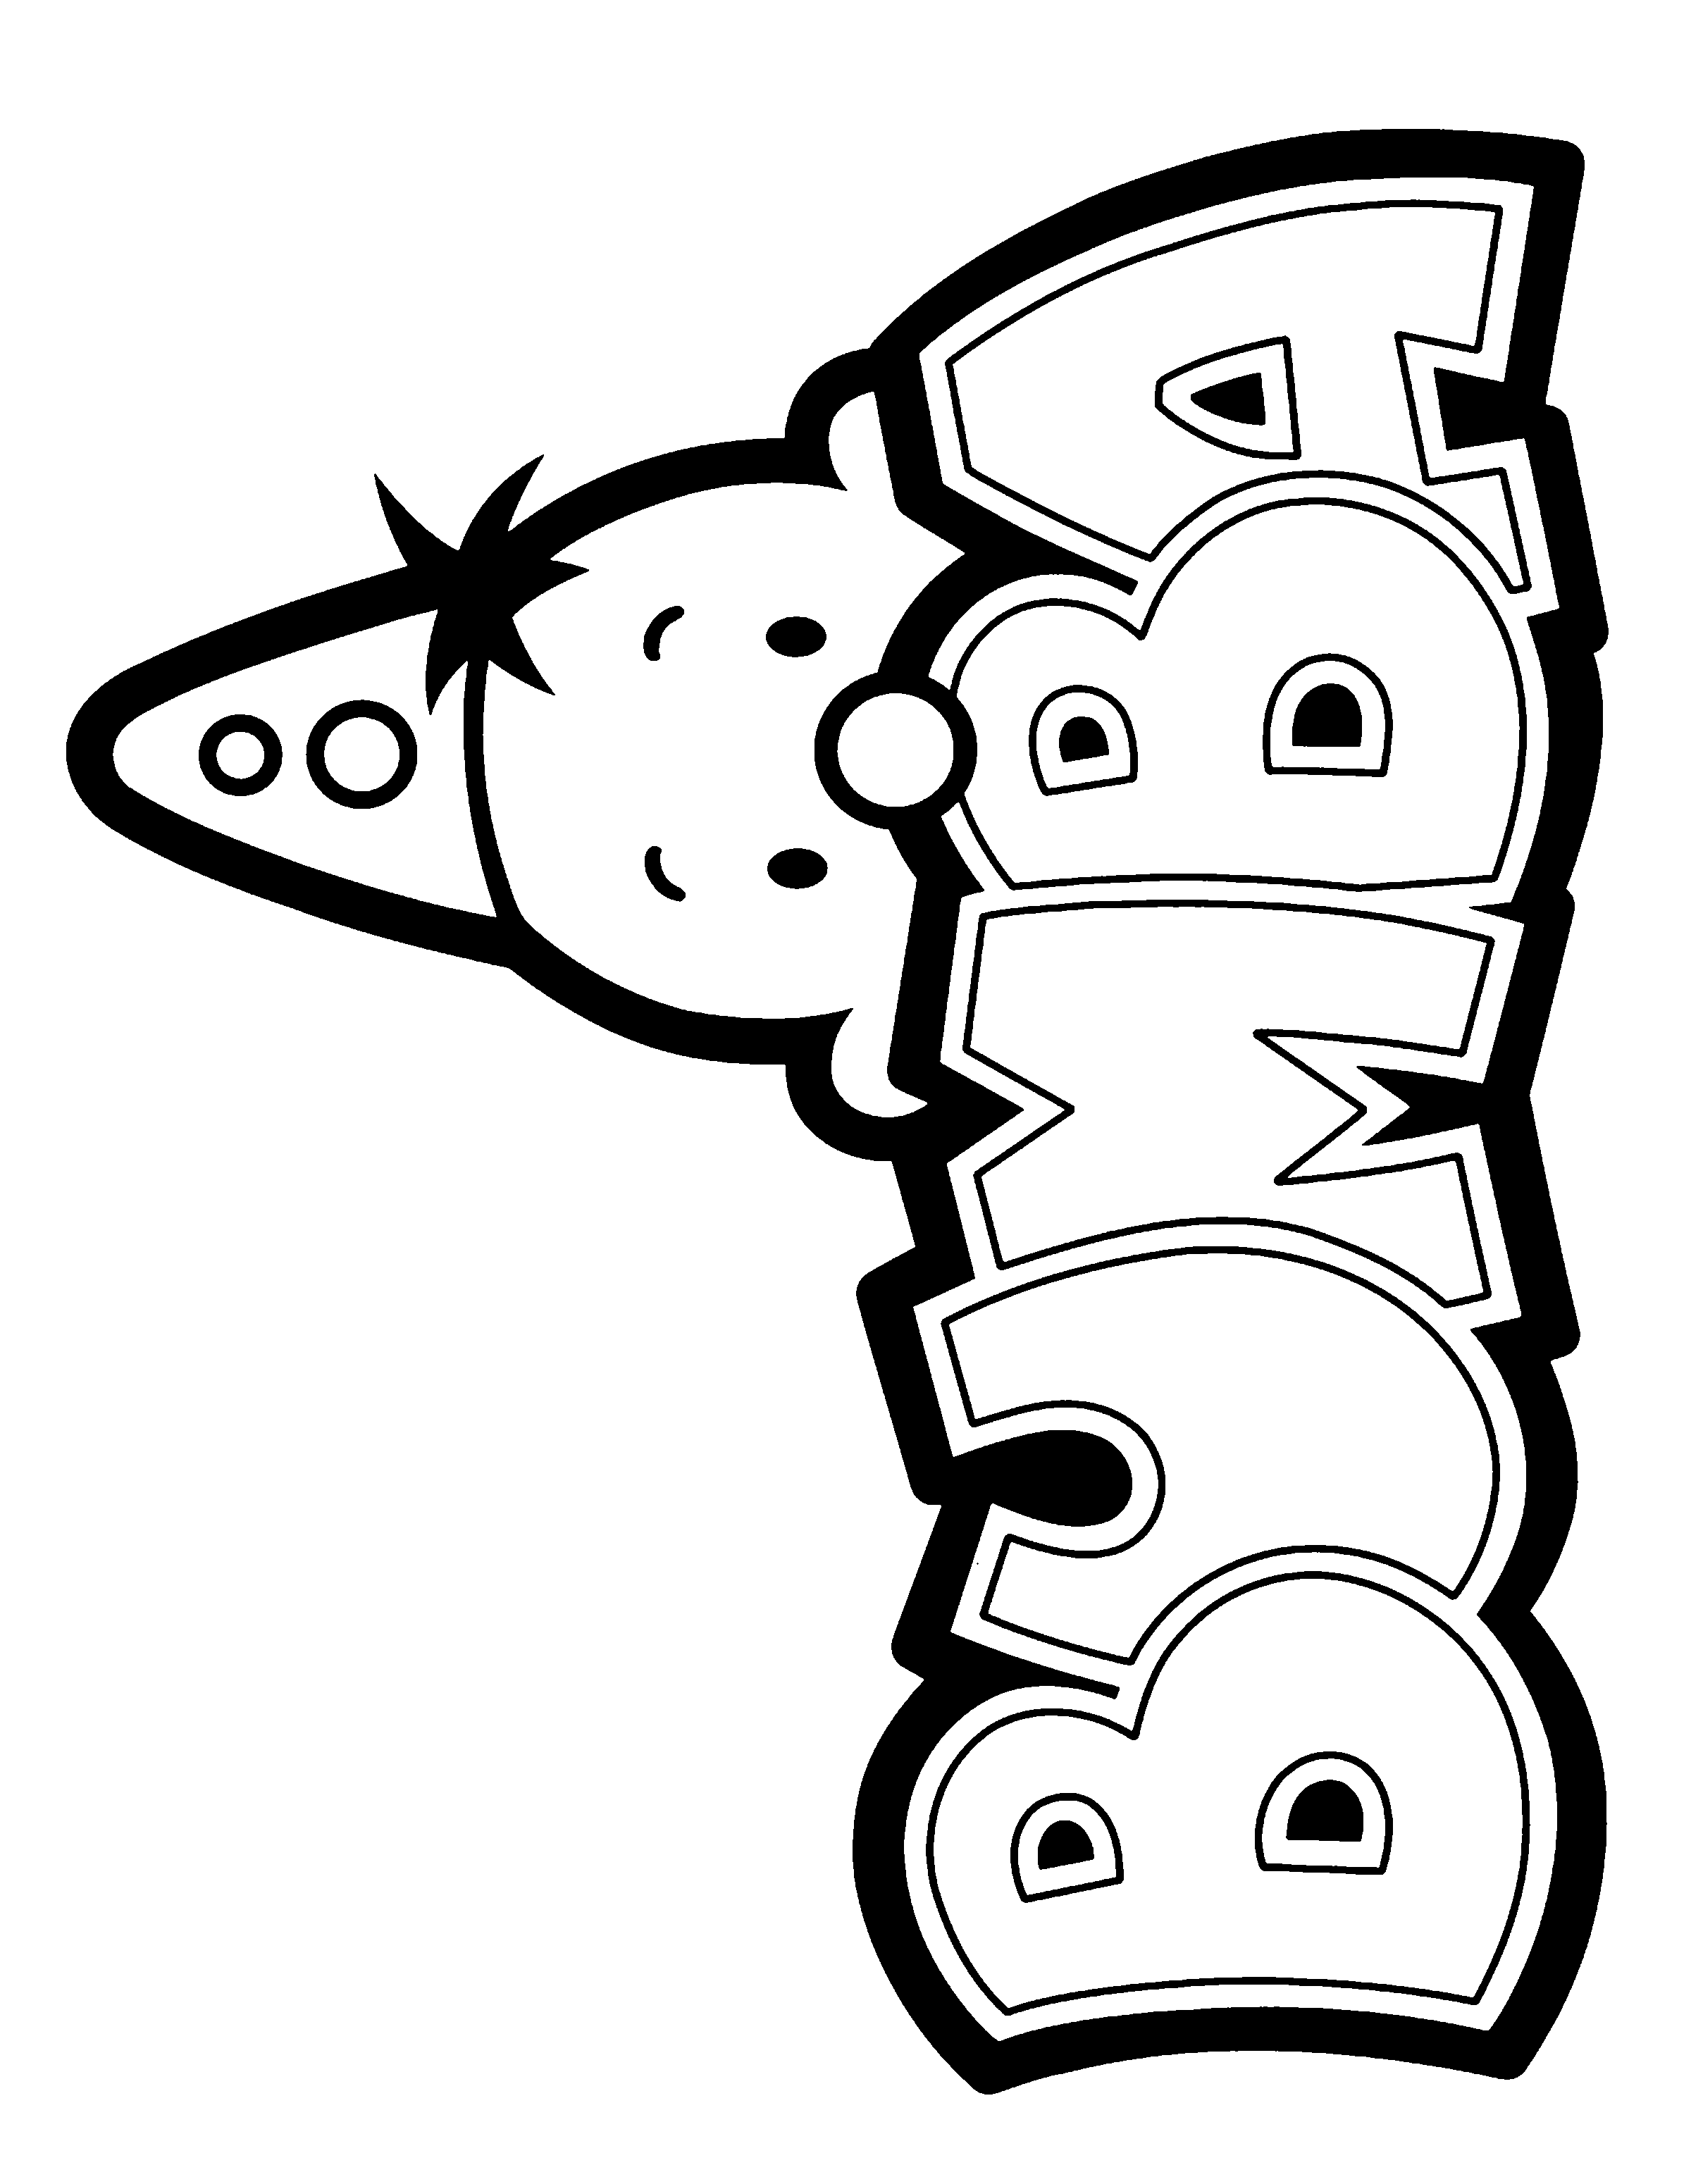 Le Logo de Bumba à colorier, avec la tête du petit clown